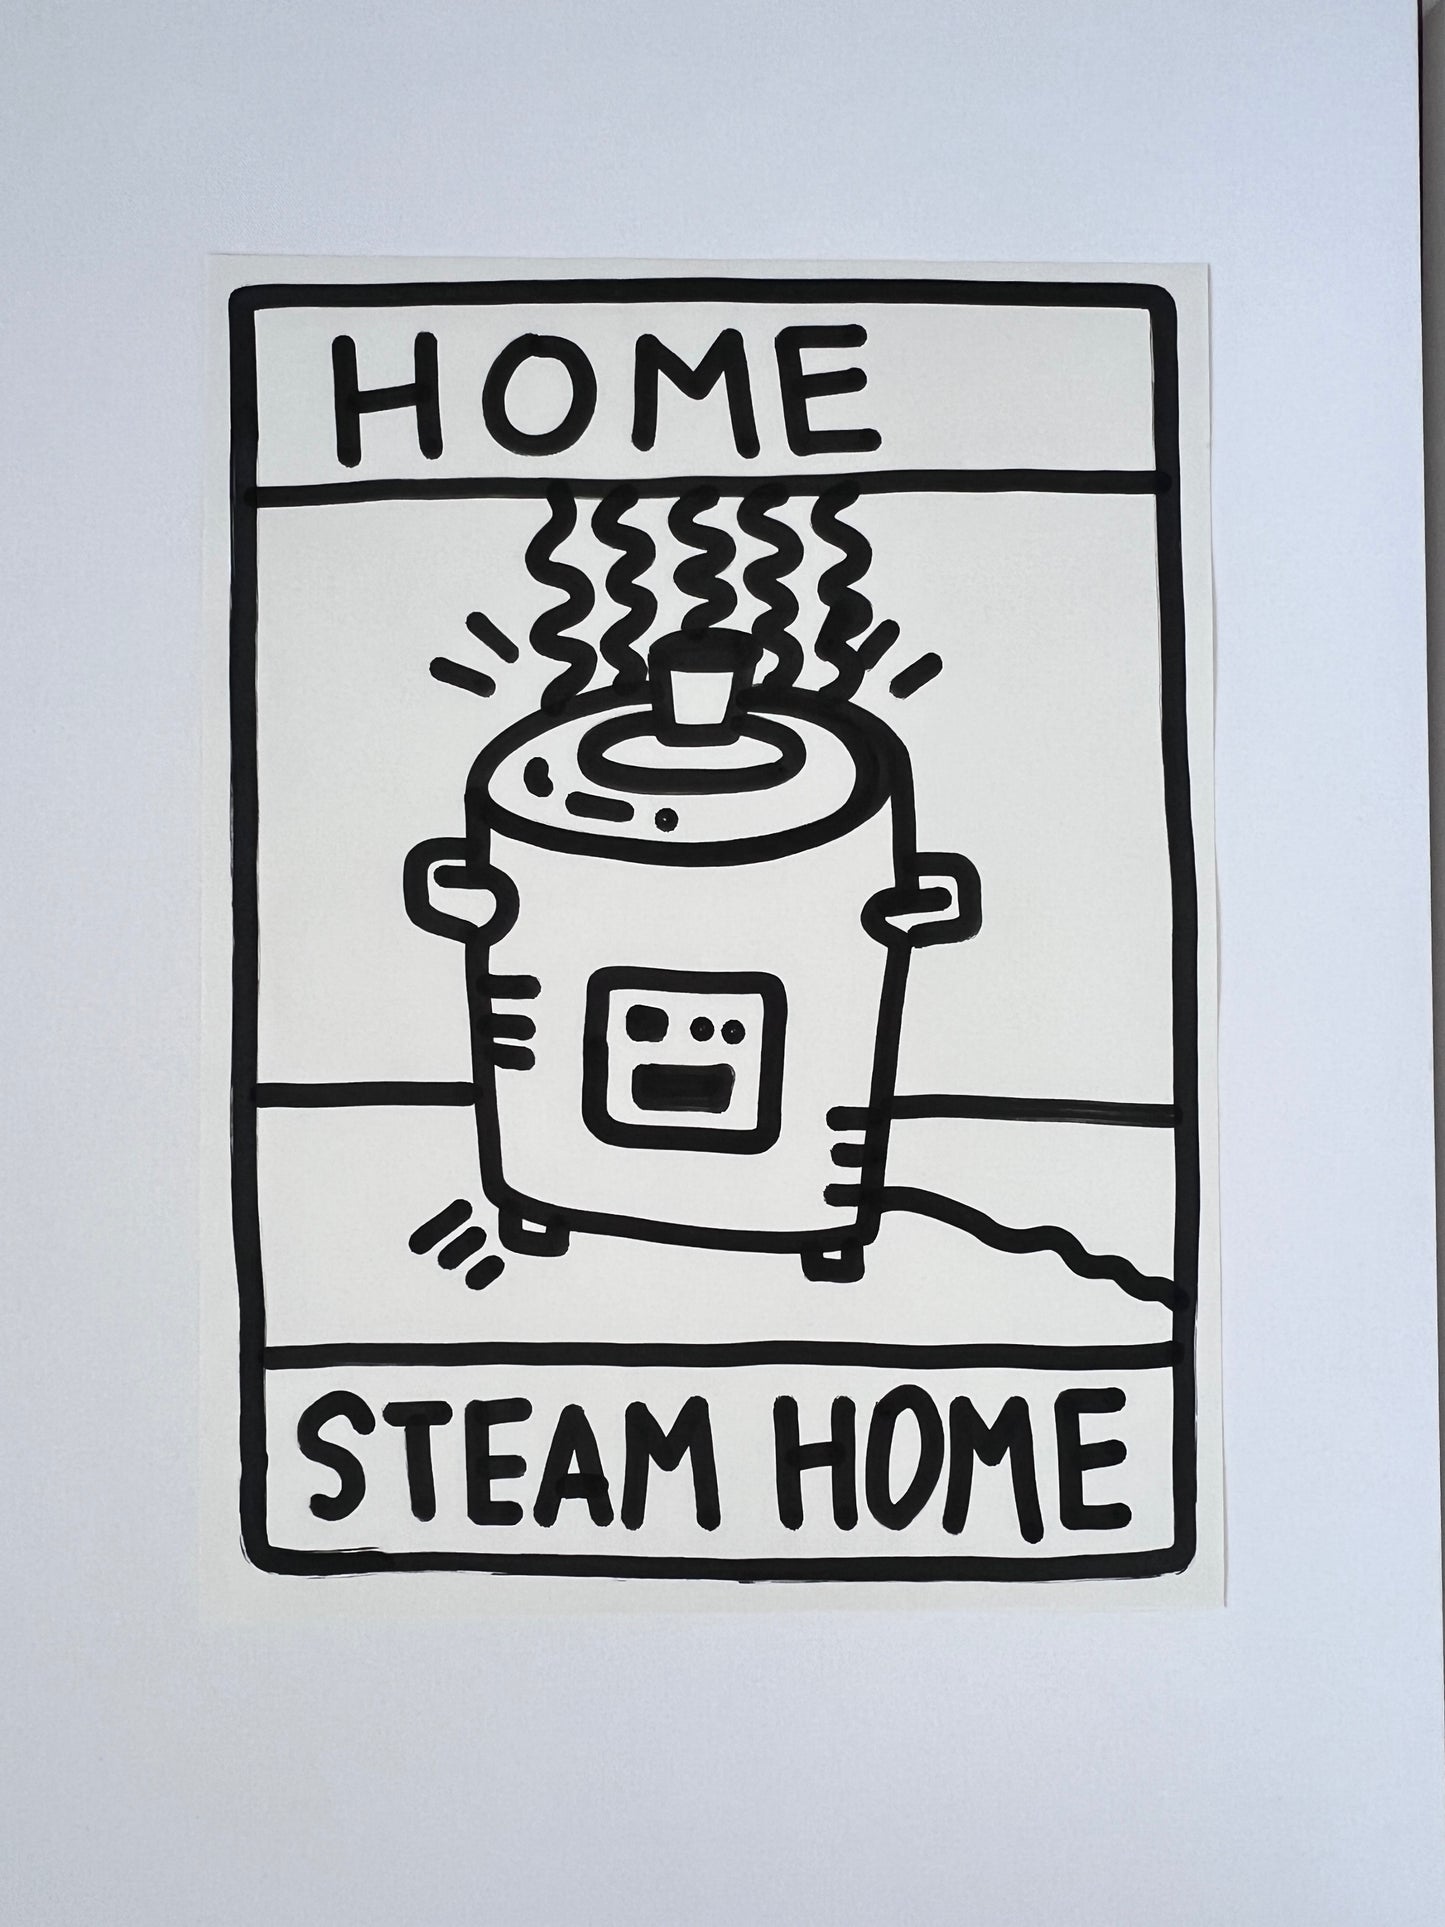 Home Steam Home